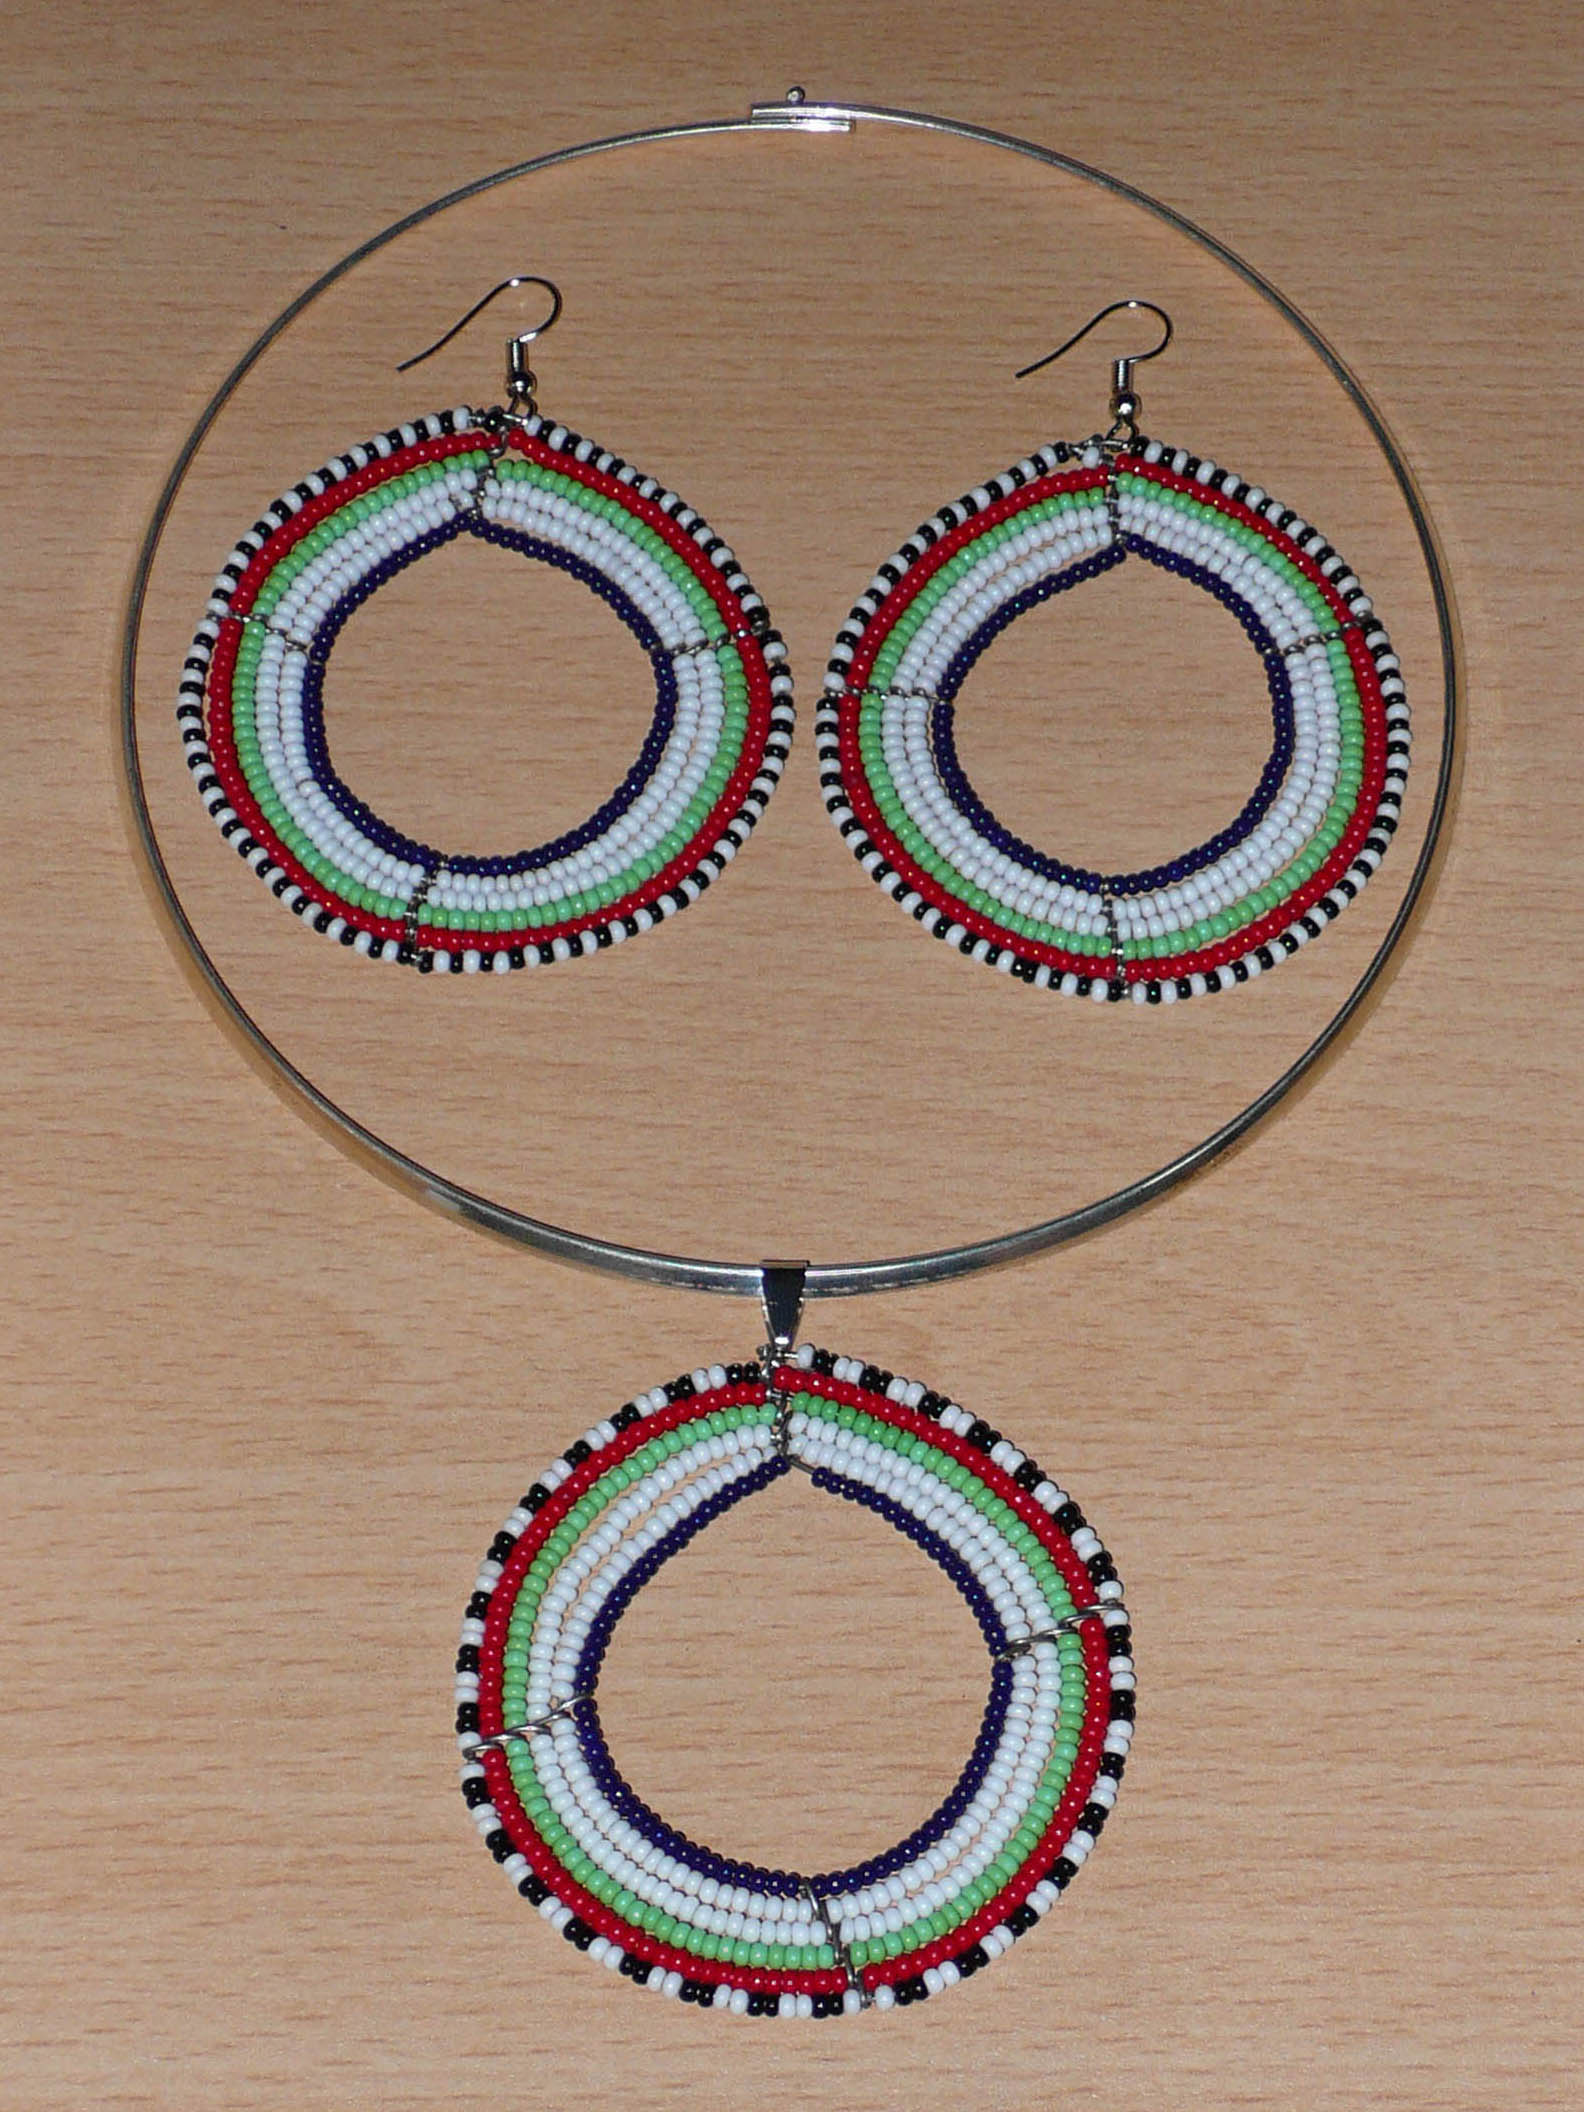 Parure de bijoux Massai au style hippie chic composée d'un collier ras-de-cou en perles de rocaille principalement blanches, puis vertes, rouges, noires et bleu marine enfilées sur des fils de fer montés en forme de cercles, ainsi que d'une paire de boucles d'oreilles rondes assorties au médaillon du collier. Timeless Fineries